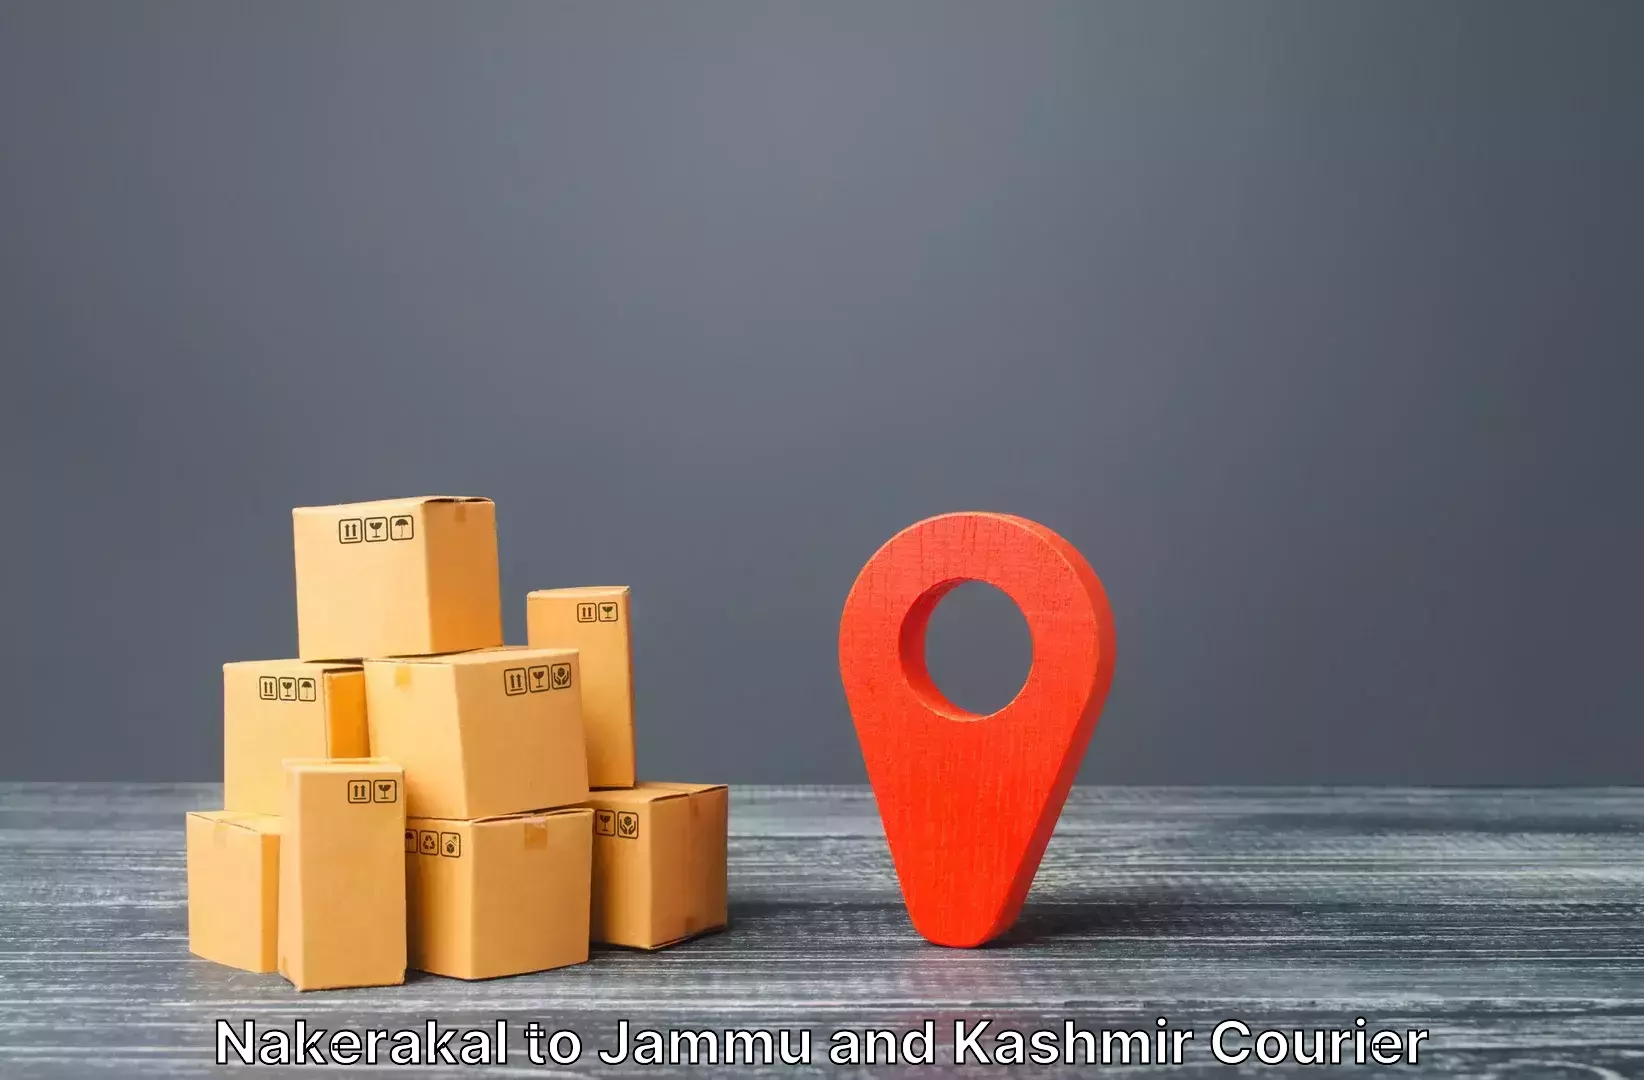 High-quality baggage shipment Nakerakal to Jammu and Kashmir